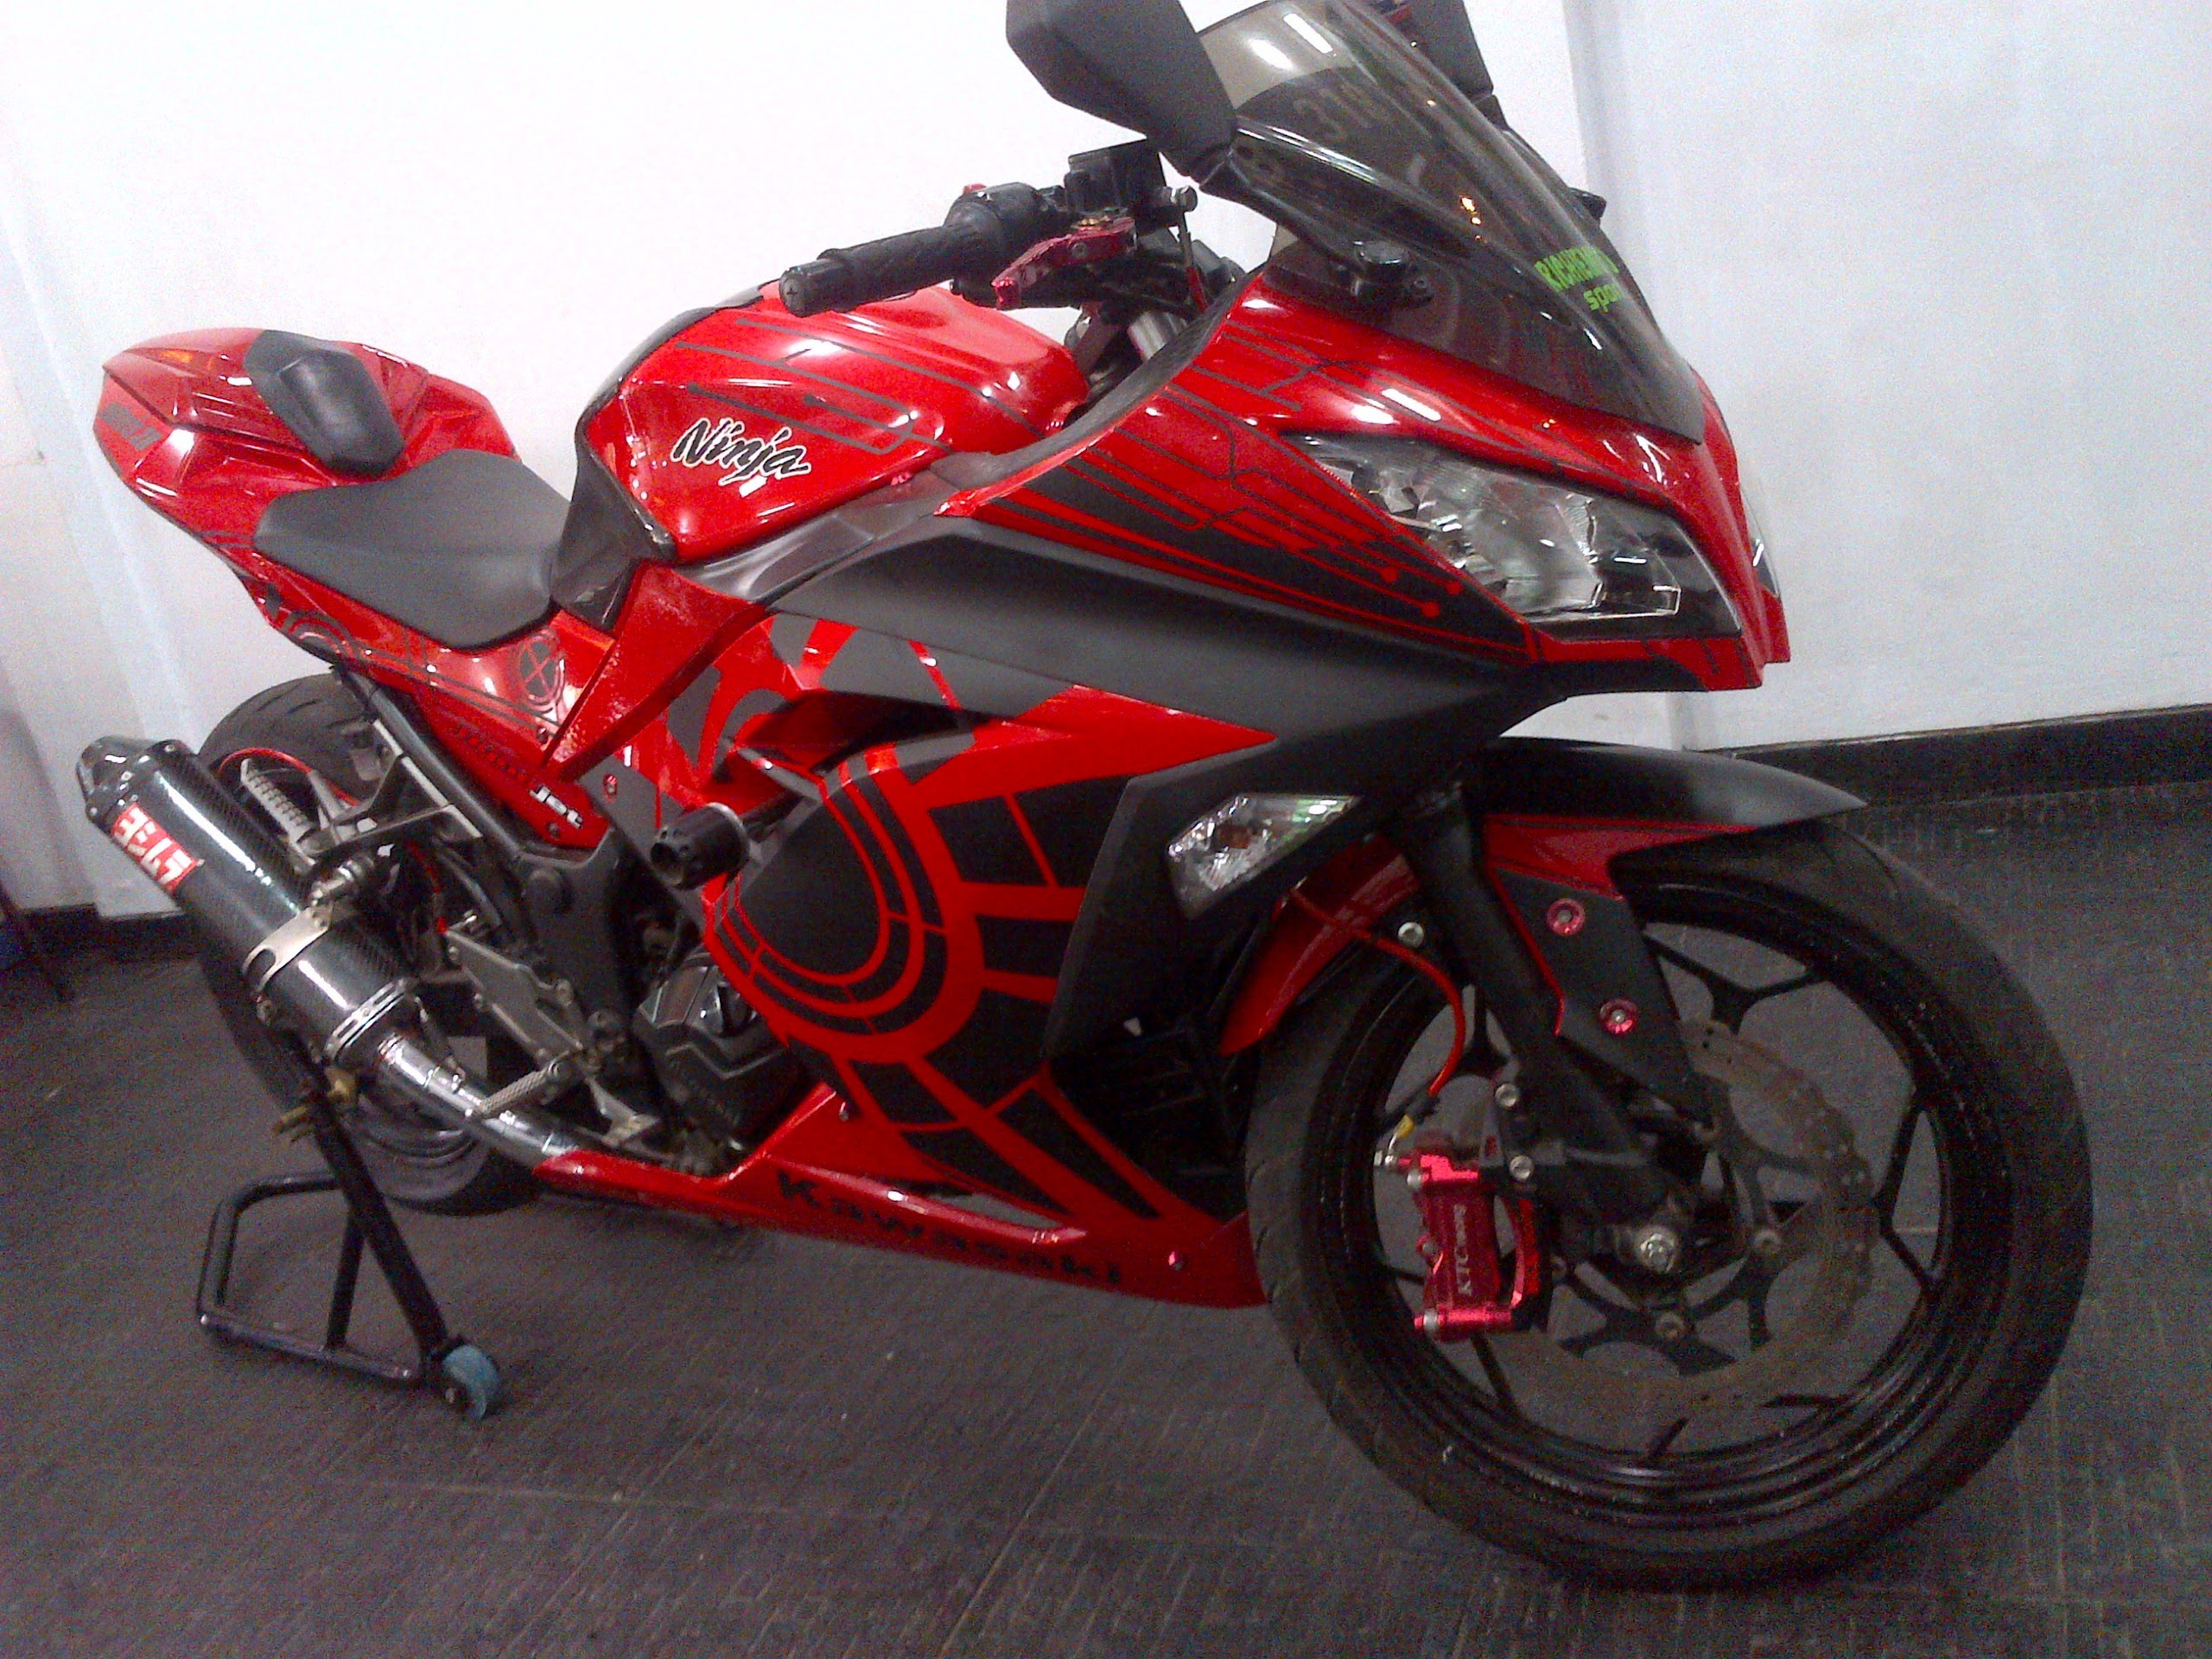 Modifikasi Motor Ninja 250 Merah Images